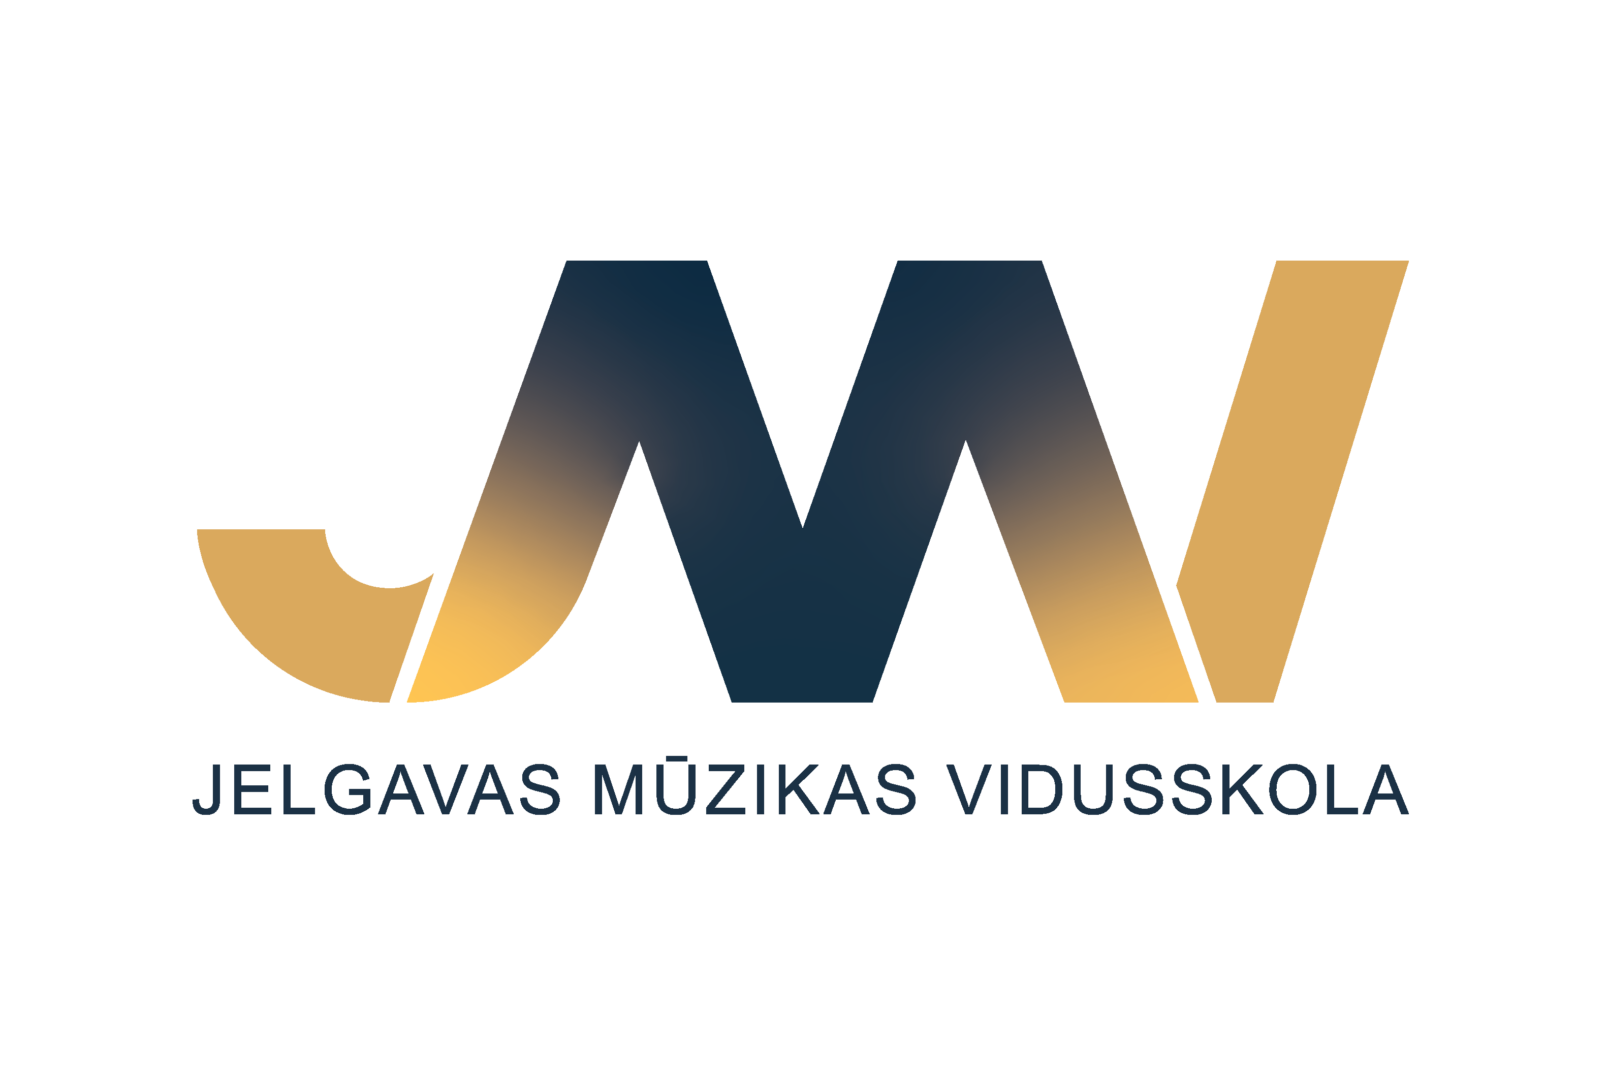 Jelgavas Mūzikas vidusskolas logo